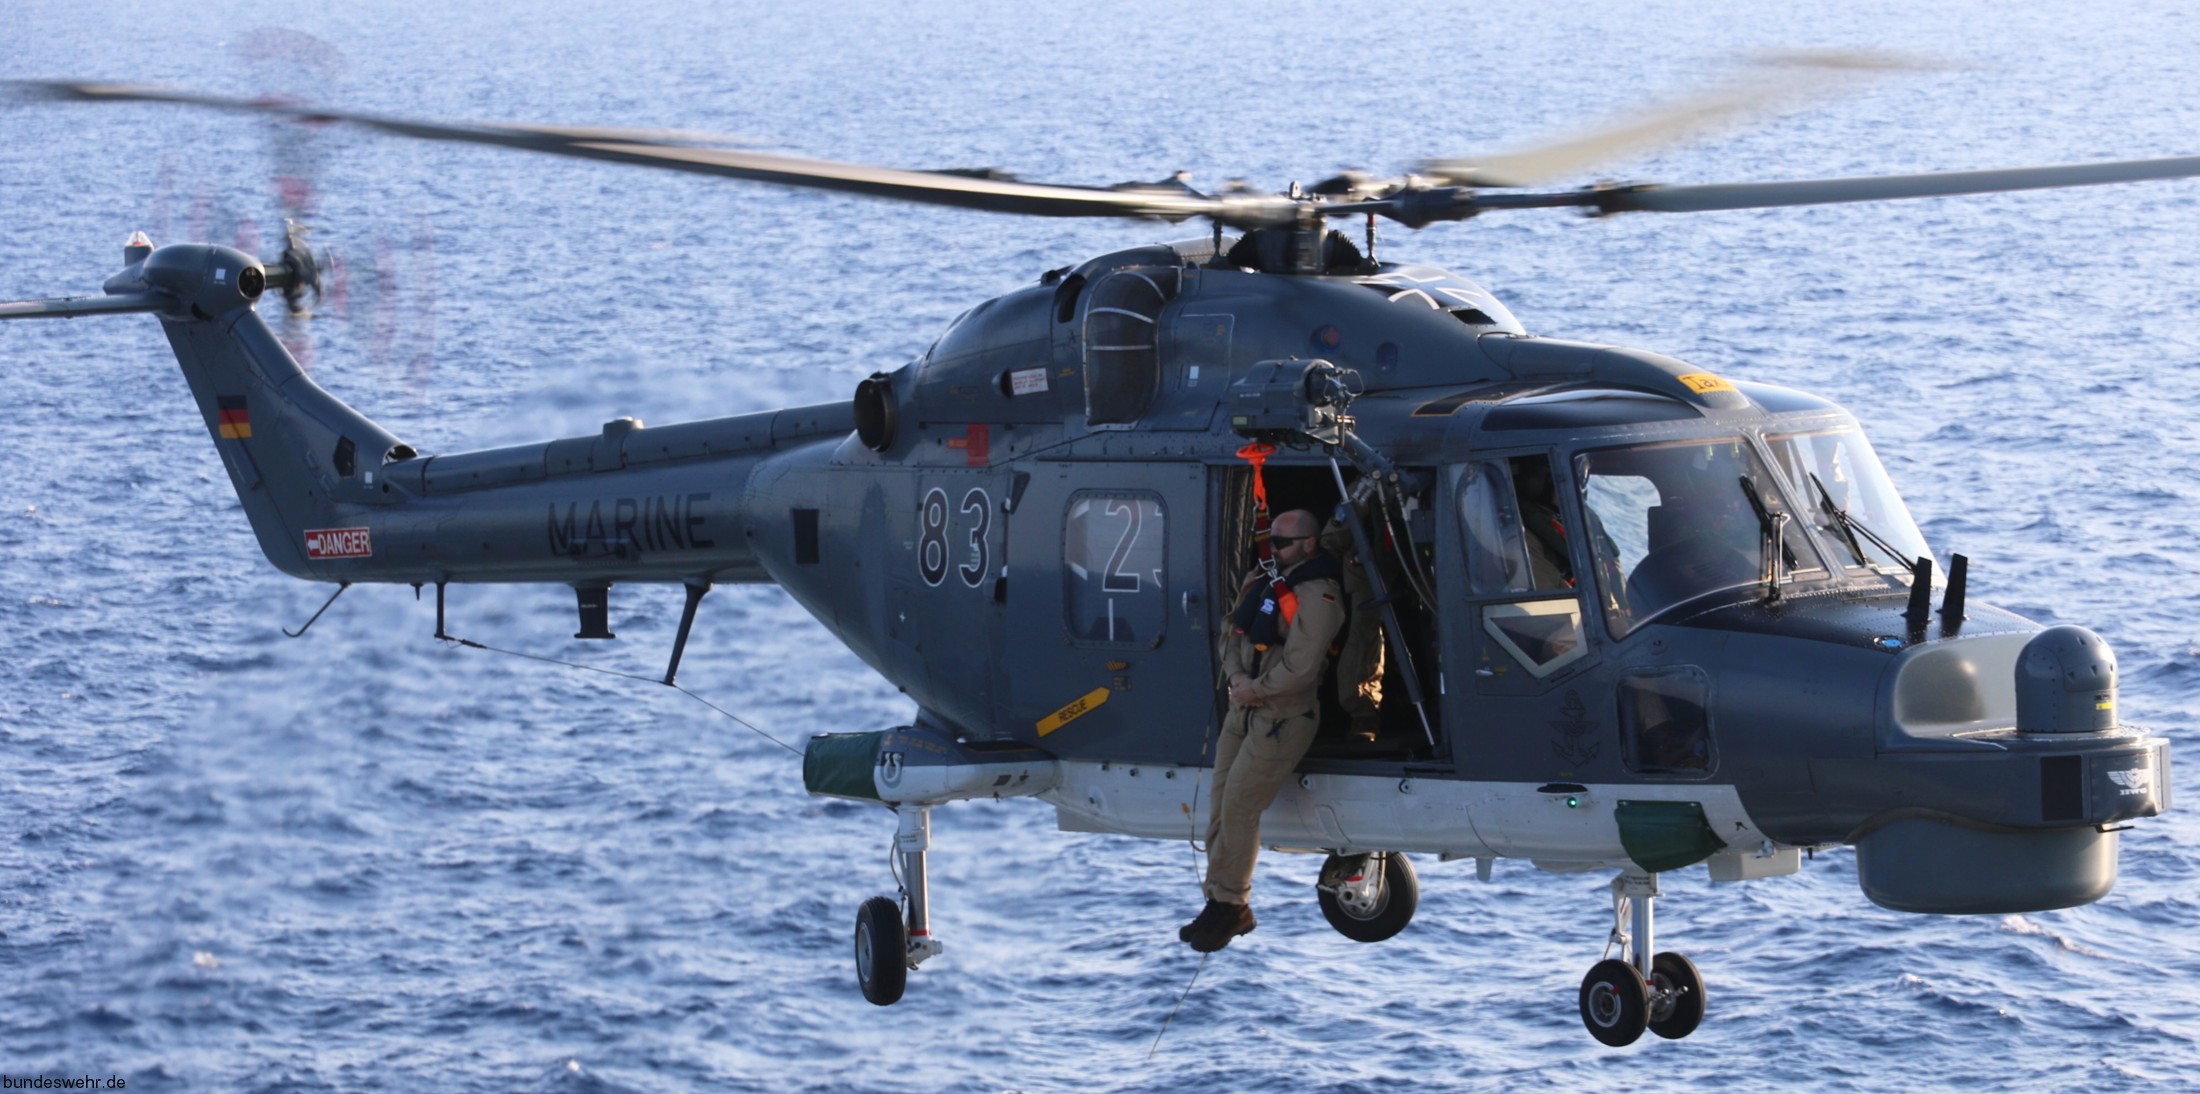 sea lynx mk.88a westland naval helicopter german navy deutsche marine 06